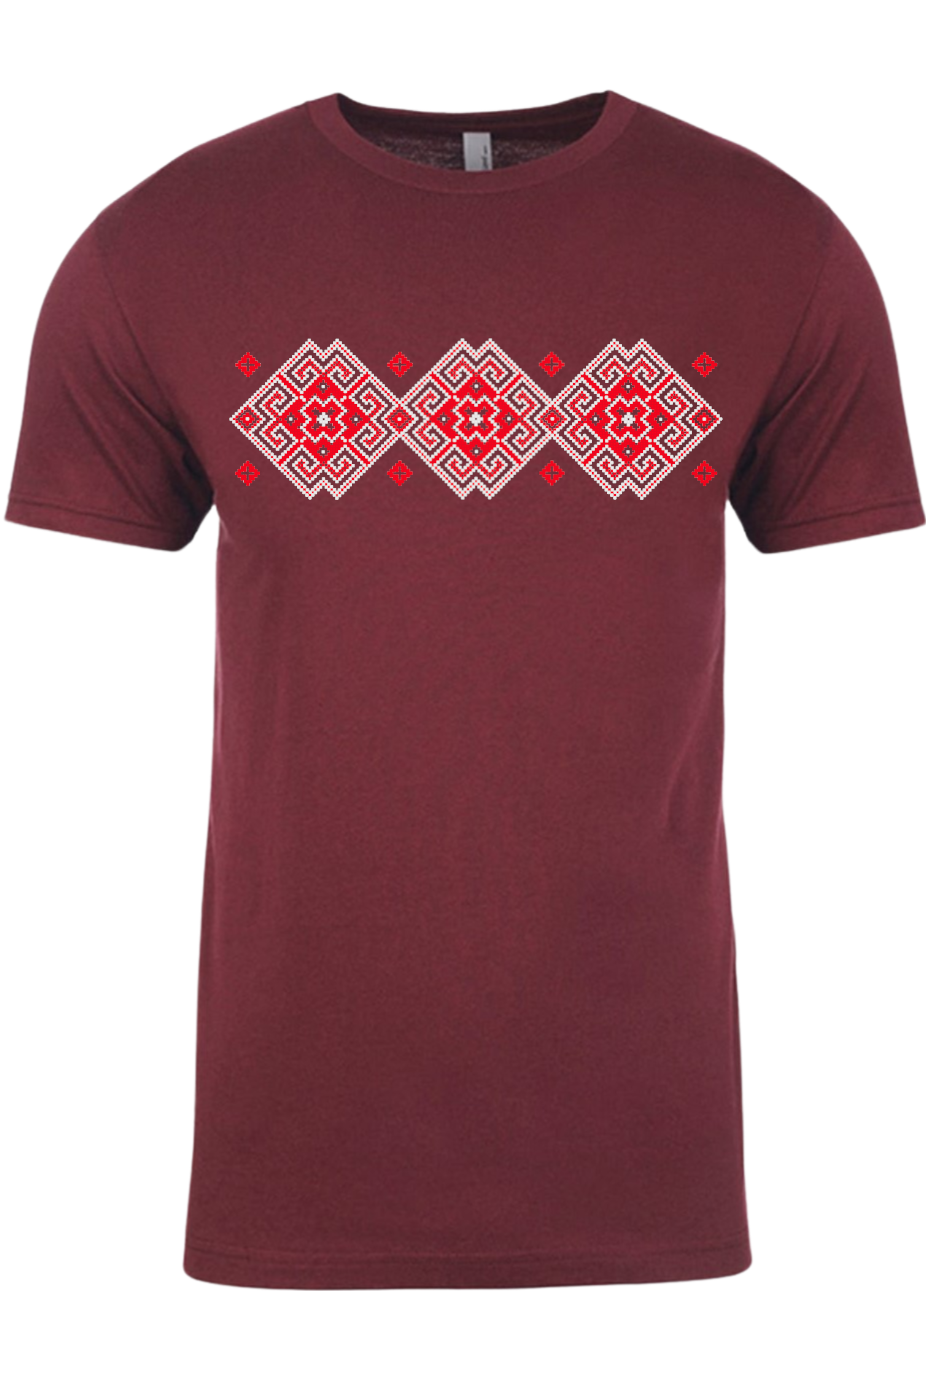 Adult t-shirt "Vortex" red